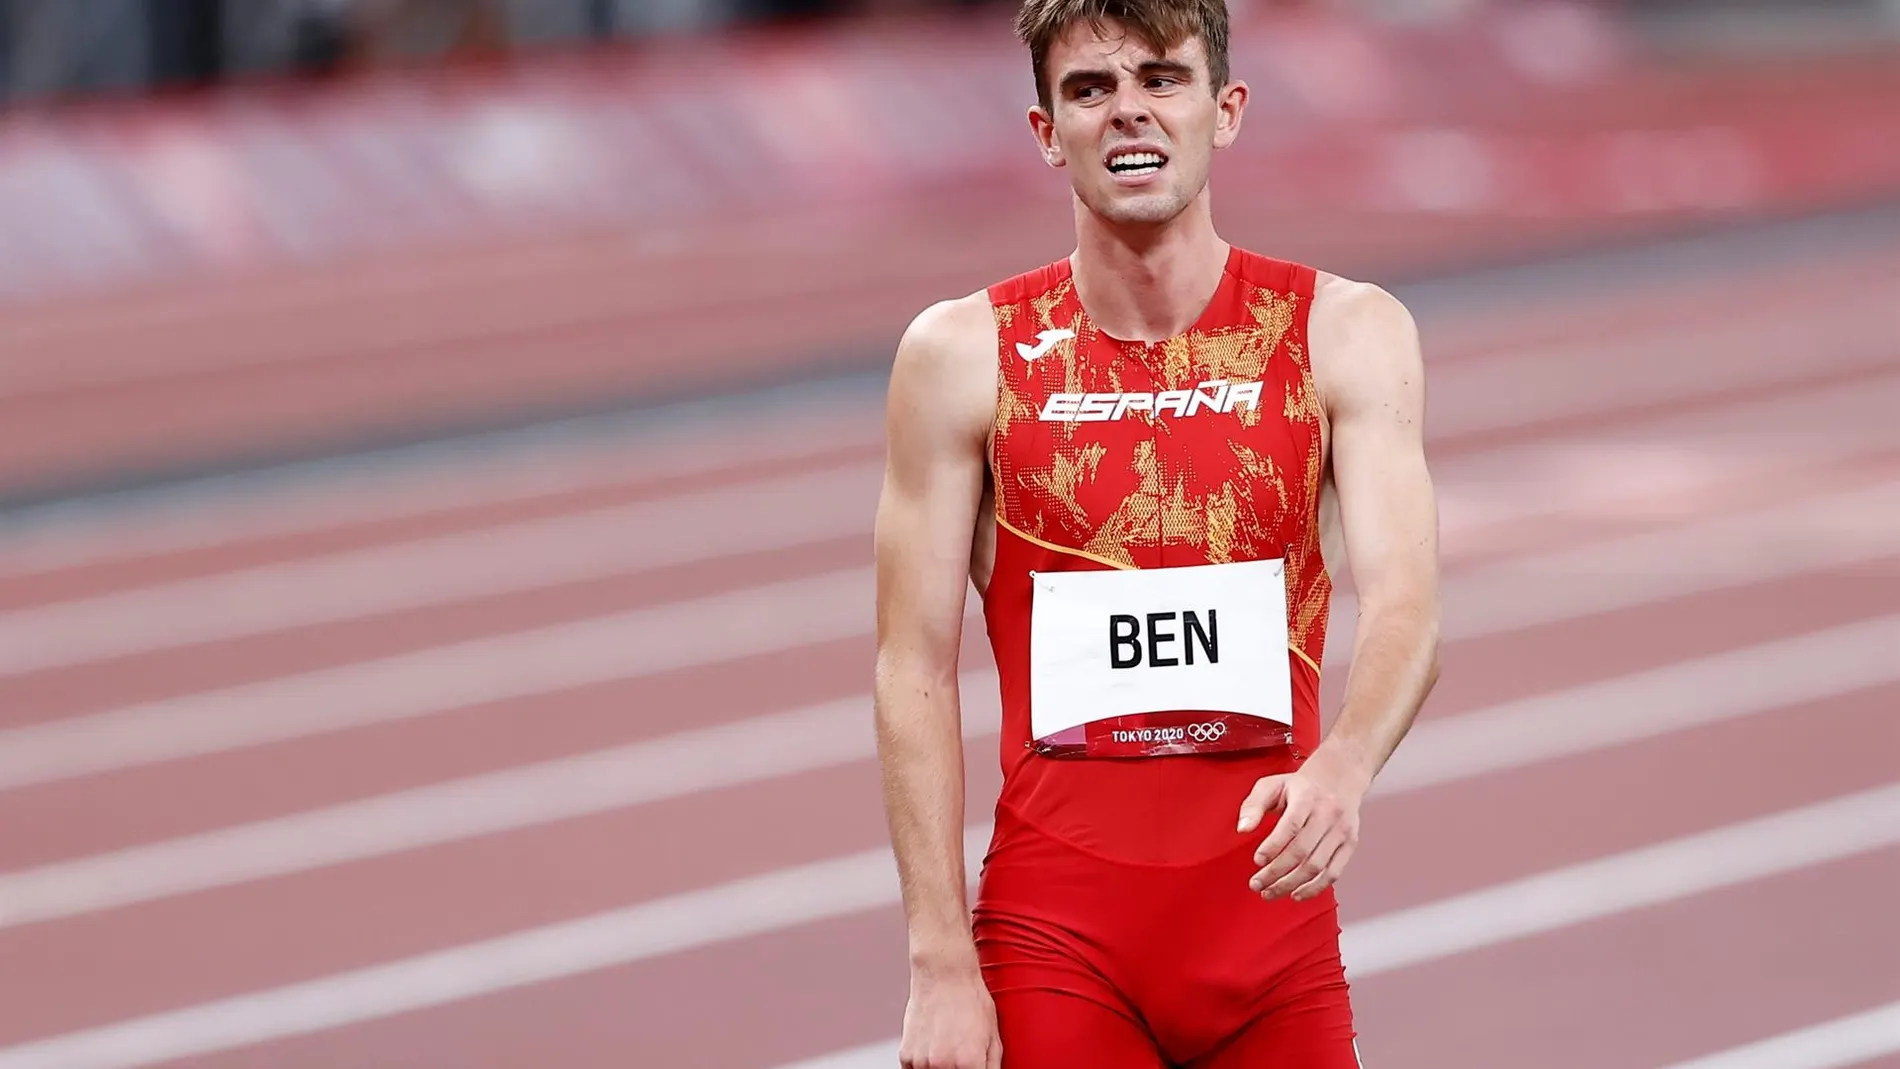 Adrián Ben logra un gran quinto puesto en la final olímpica de 800 metros el día de su cumpleaños